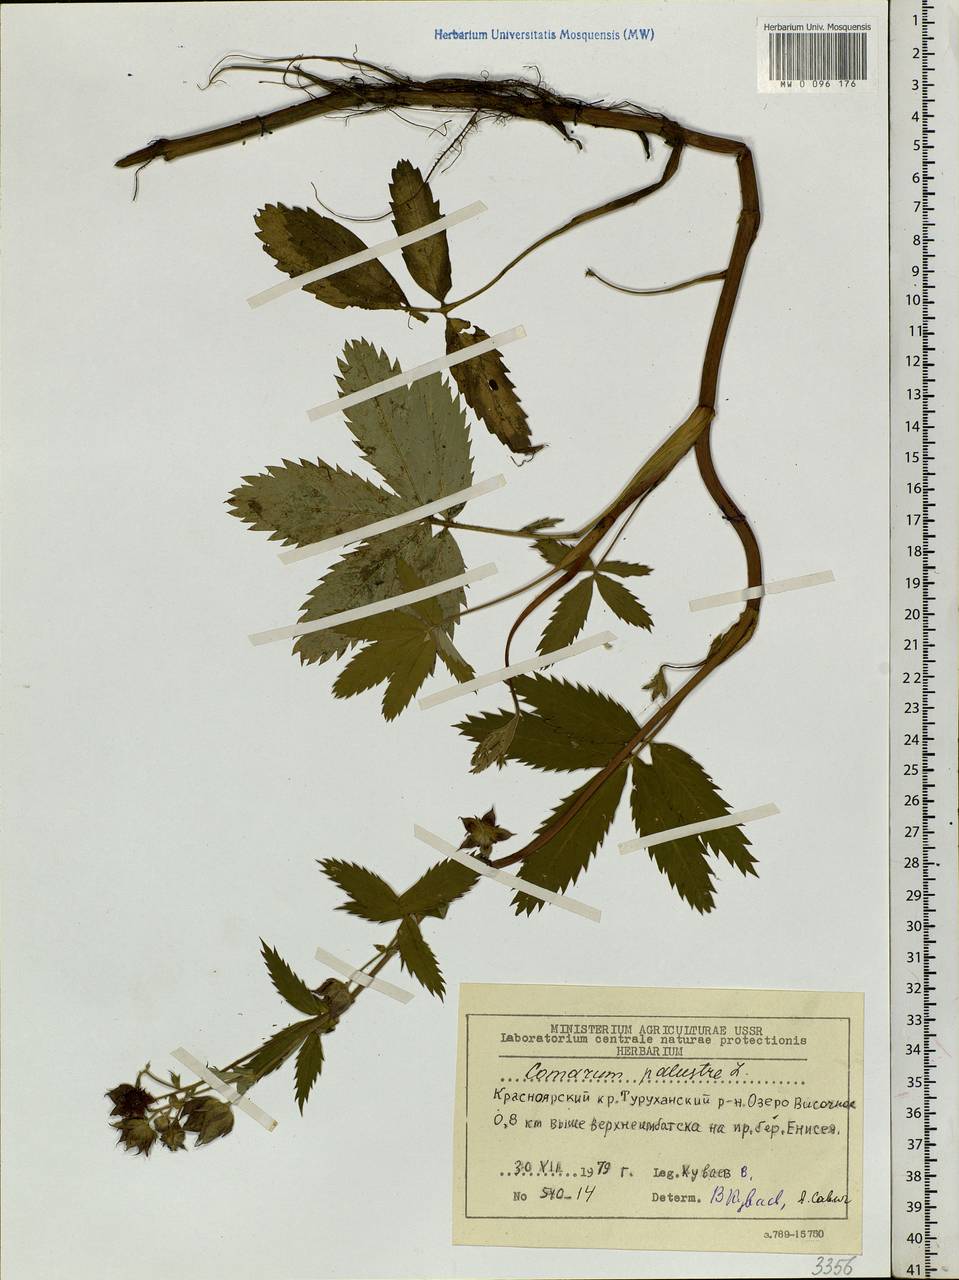 Comarum palustre L., Siberia, Central Siberia (S3) (Russia)